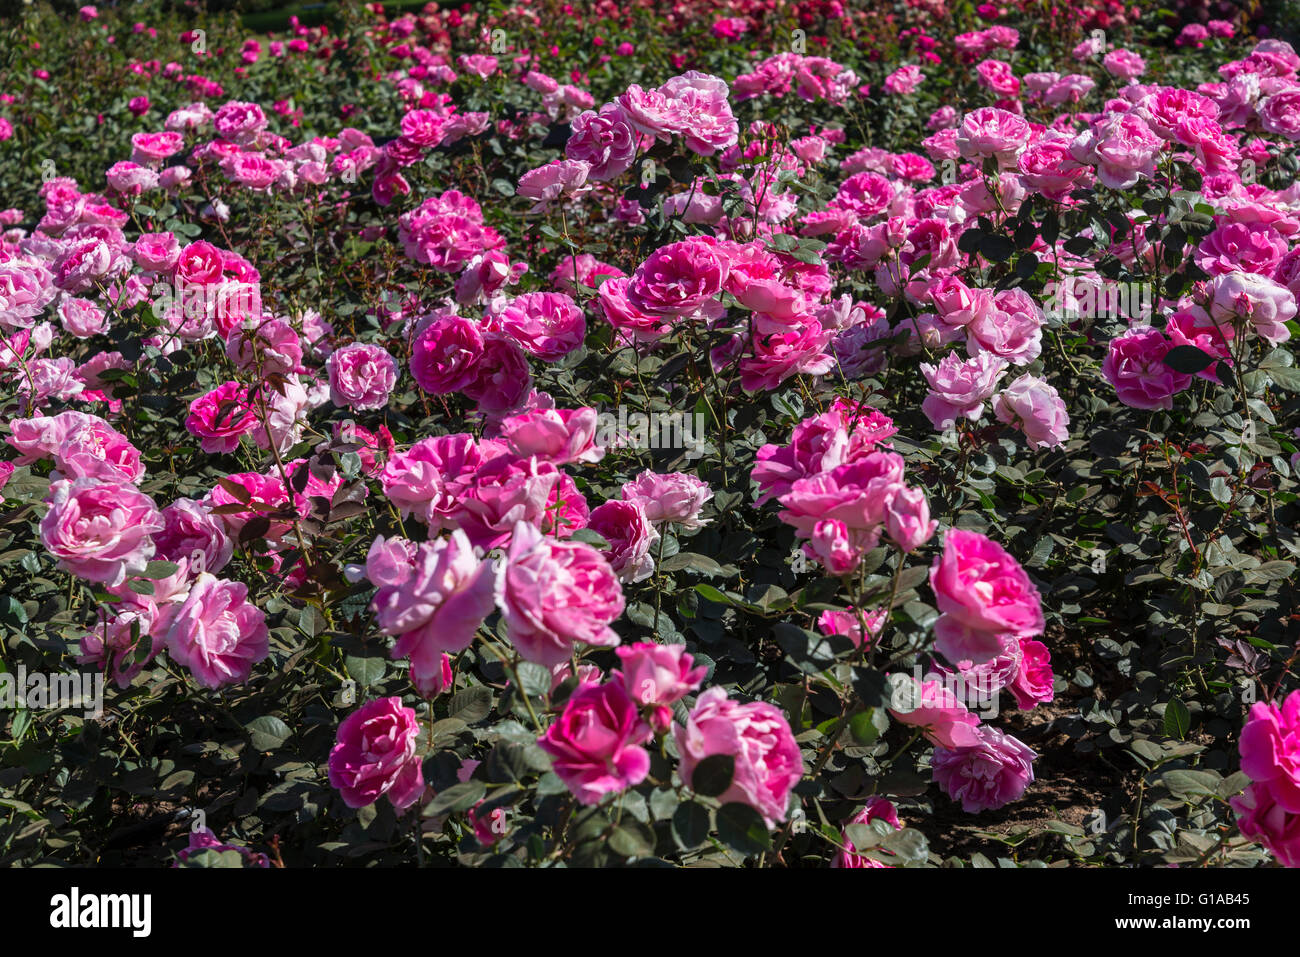 Dynastie rosas, Buenos Aires, Argentina Foto de stock